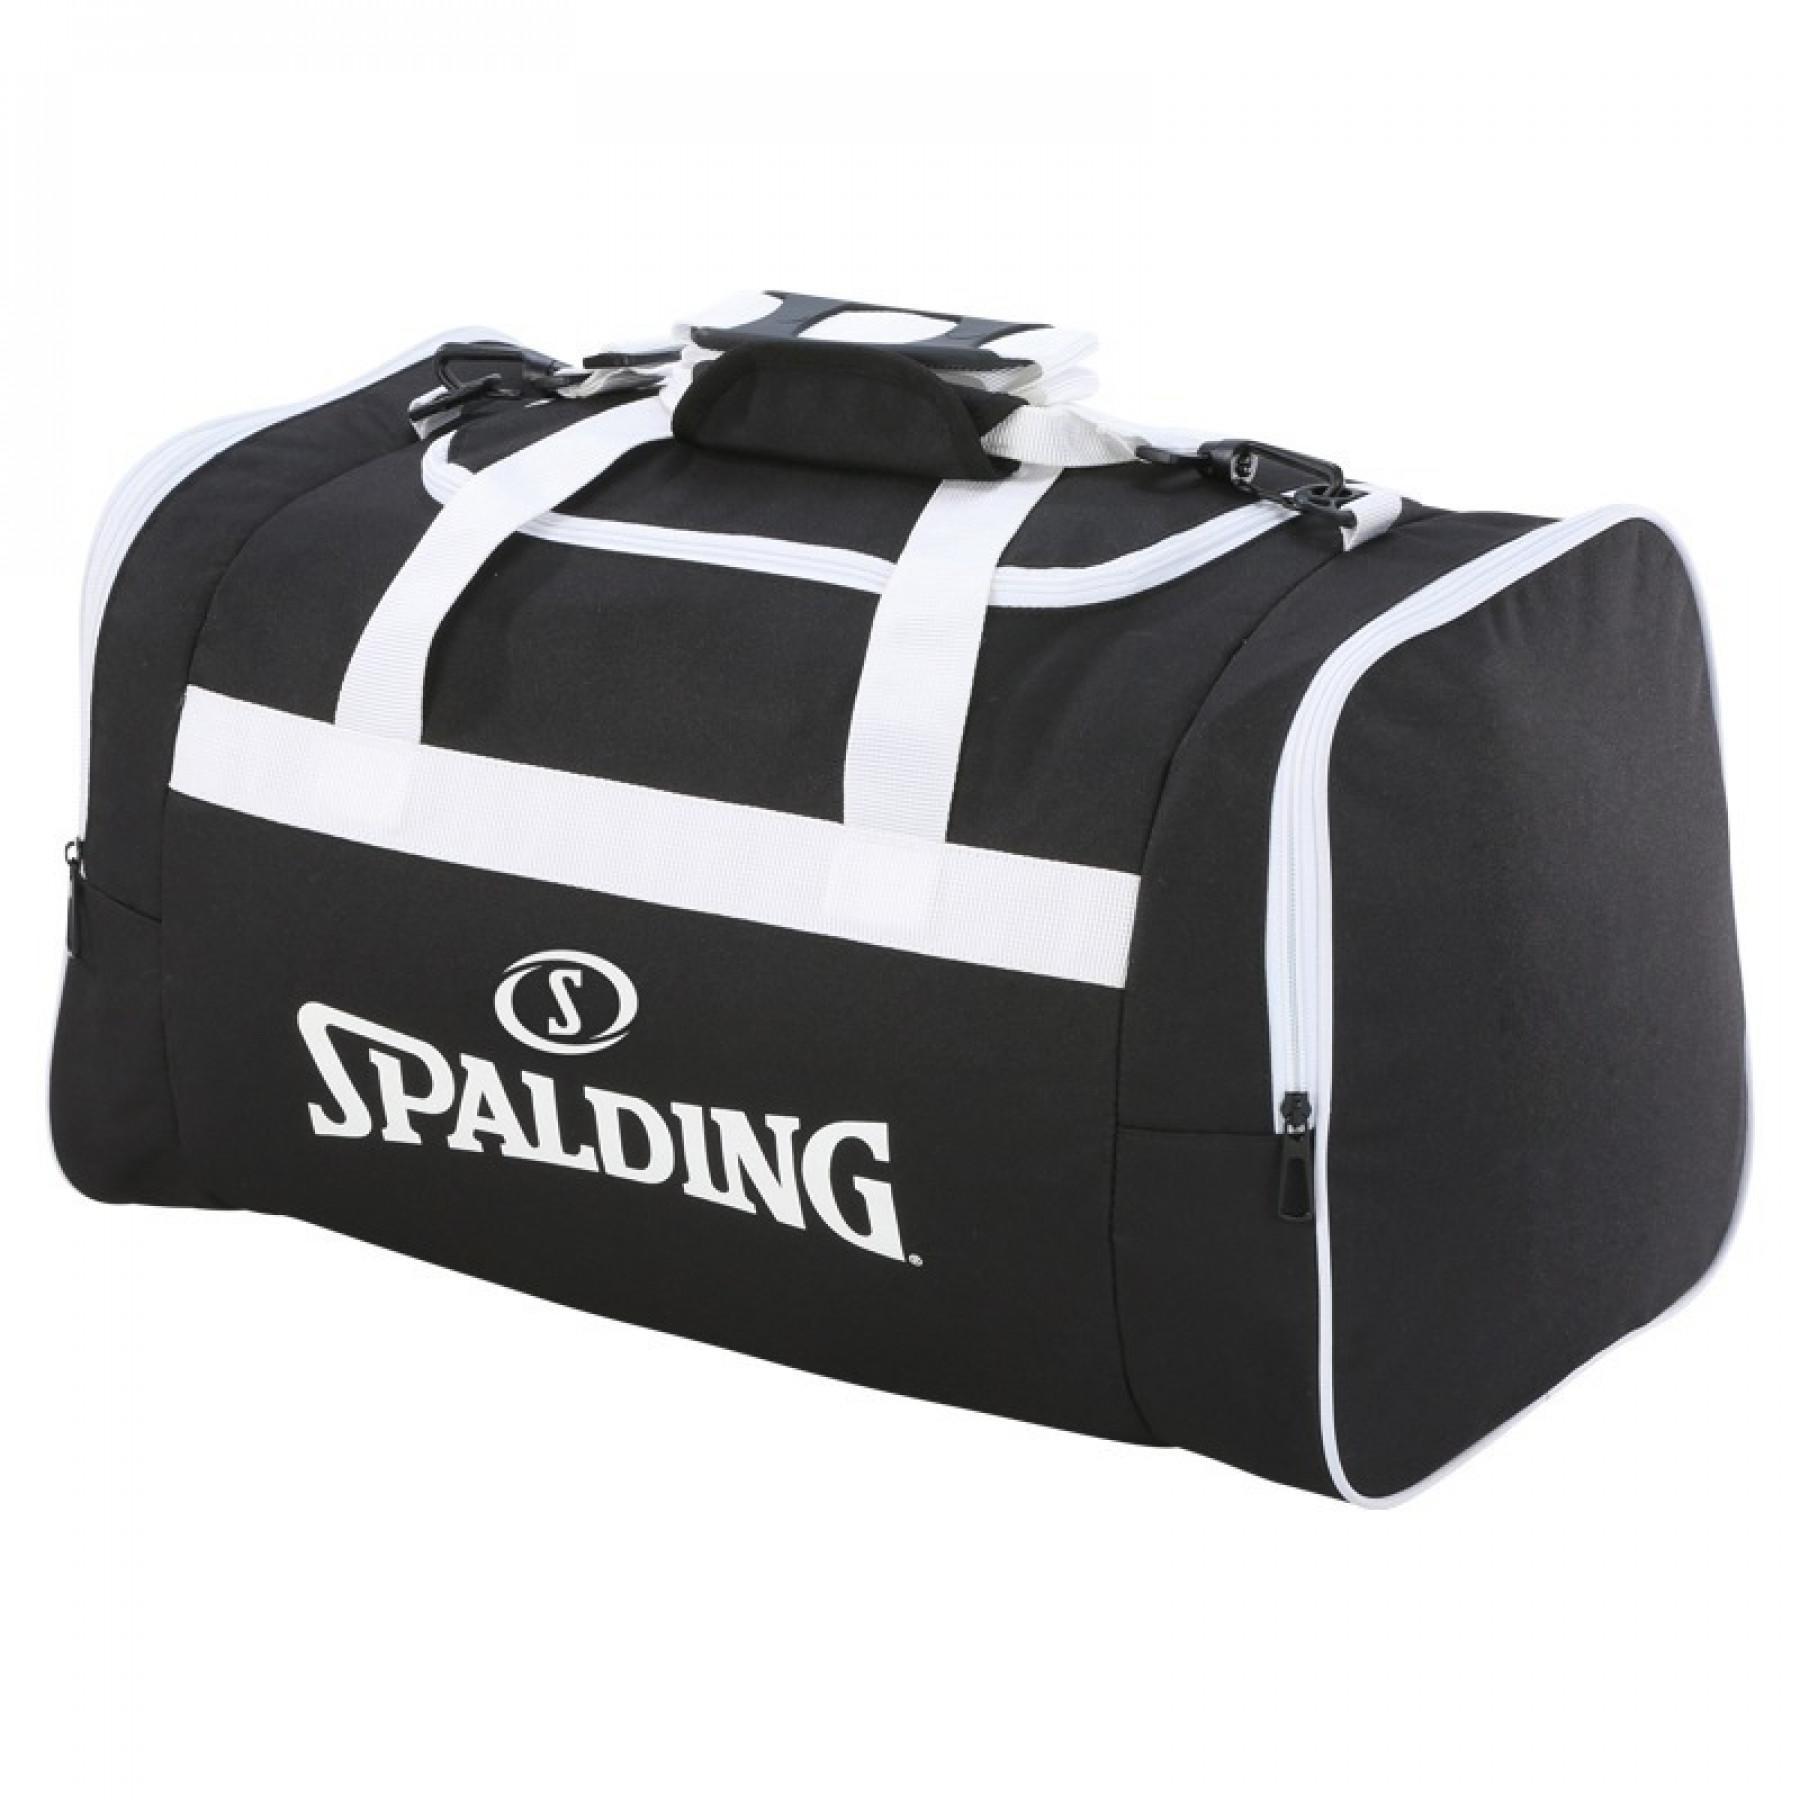 Team bag Spalding (50 litres)